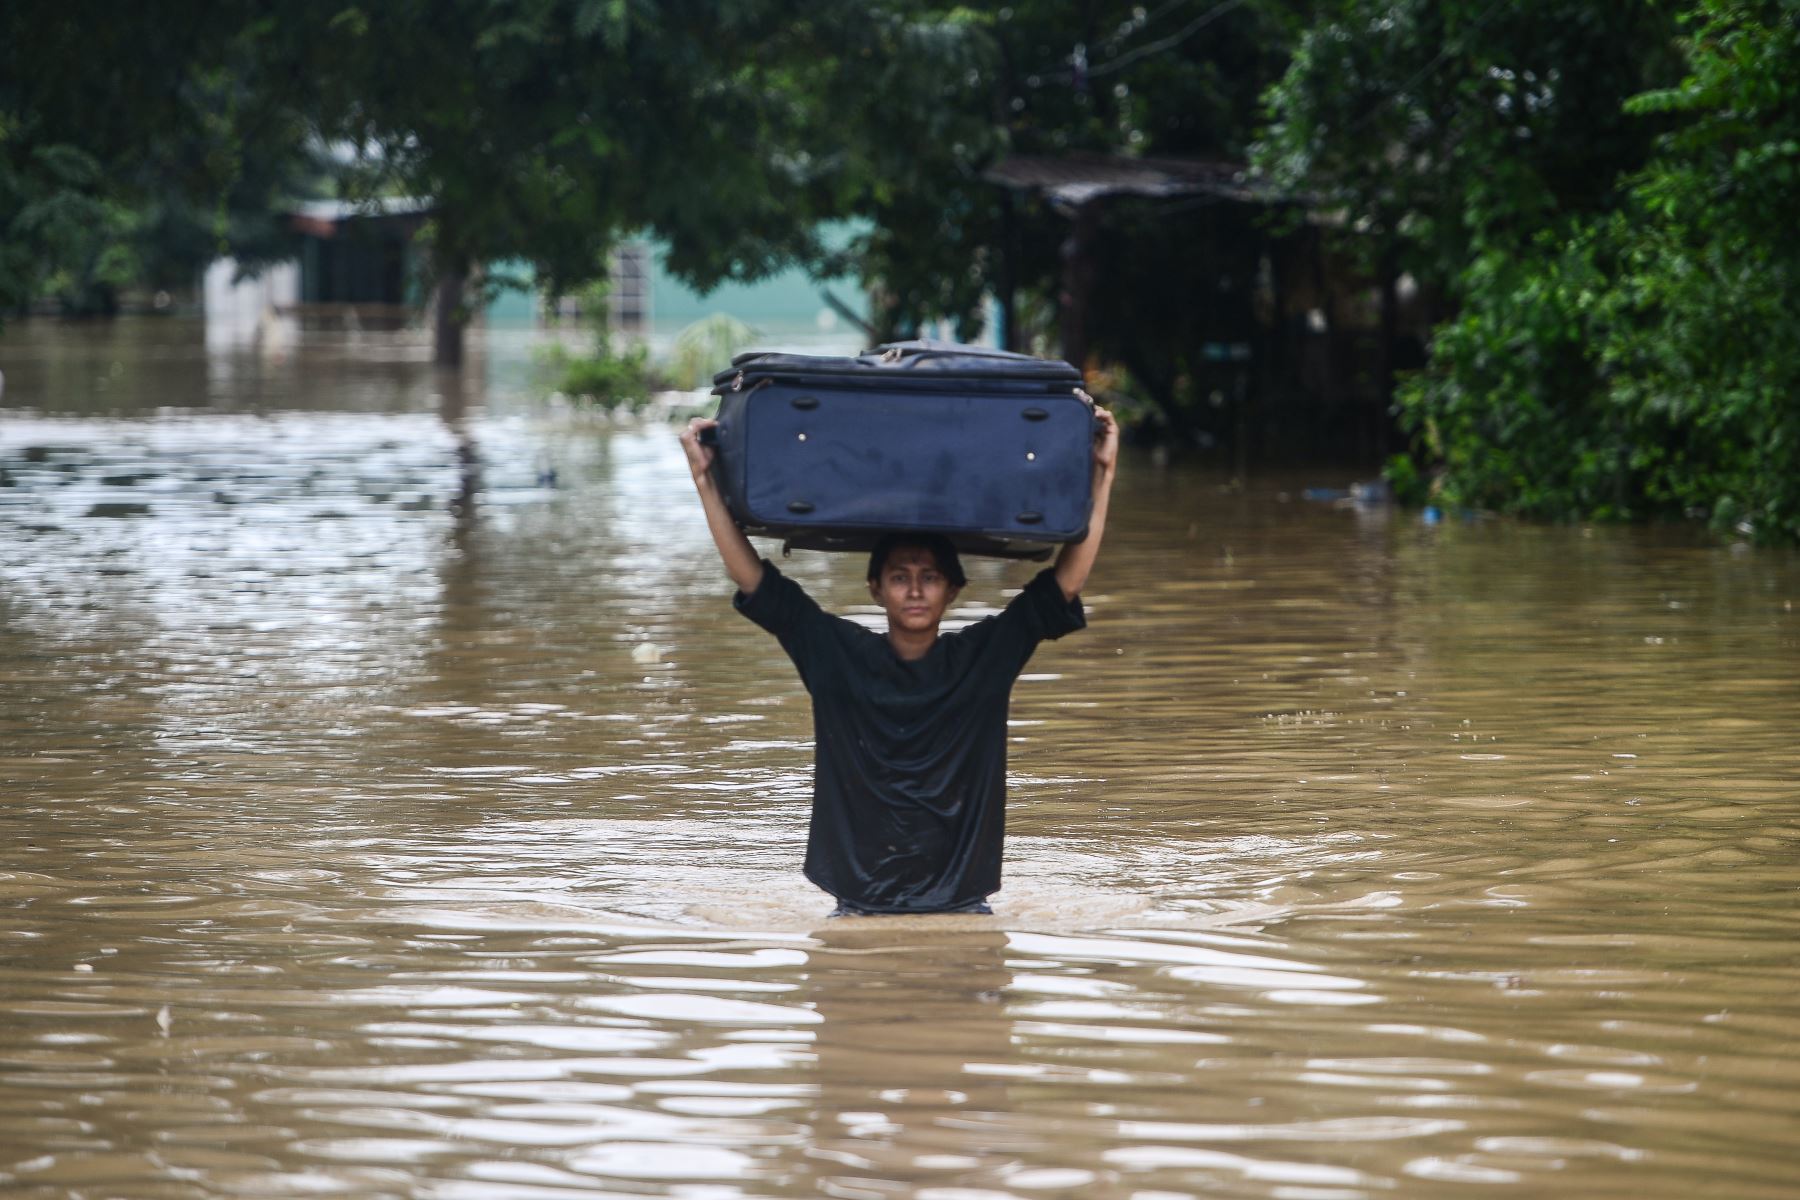 Una mujer vadea cargando un equipaje por una calle inundada luego del desborde del río Ulúa en el municipio de El Progreso, departamento de Yoro, Honduras  debido a las fuertes lluvias provocadas por el huracán Eta.
Foto: AFP